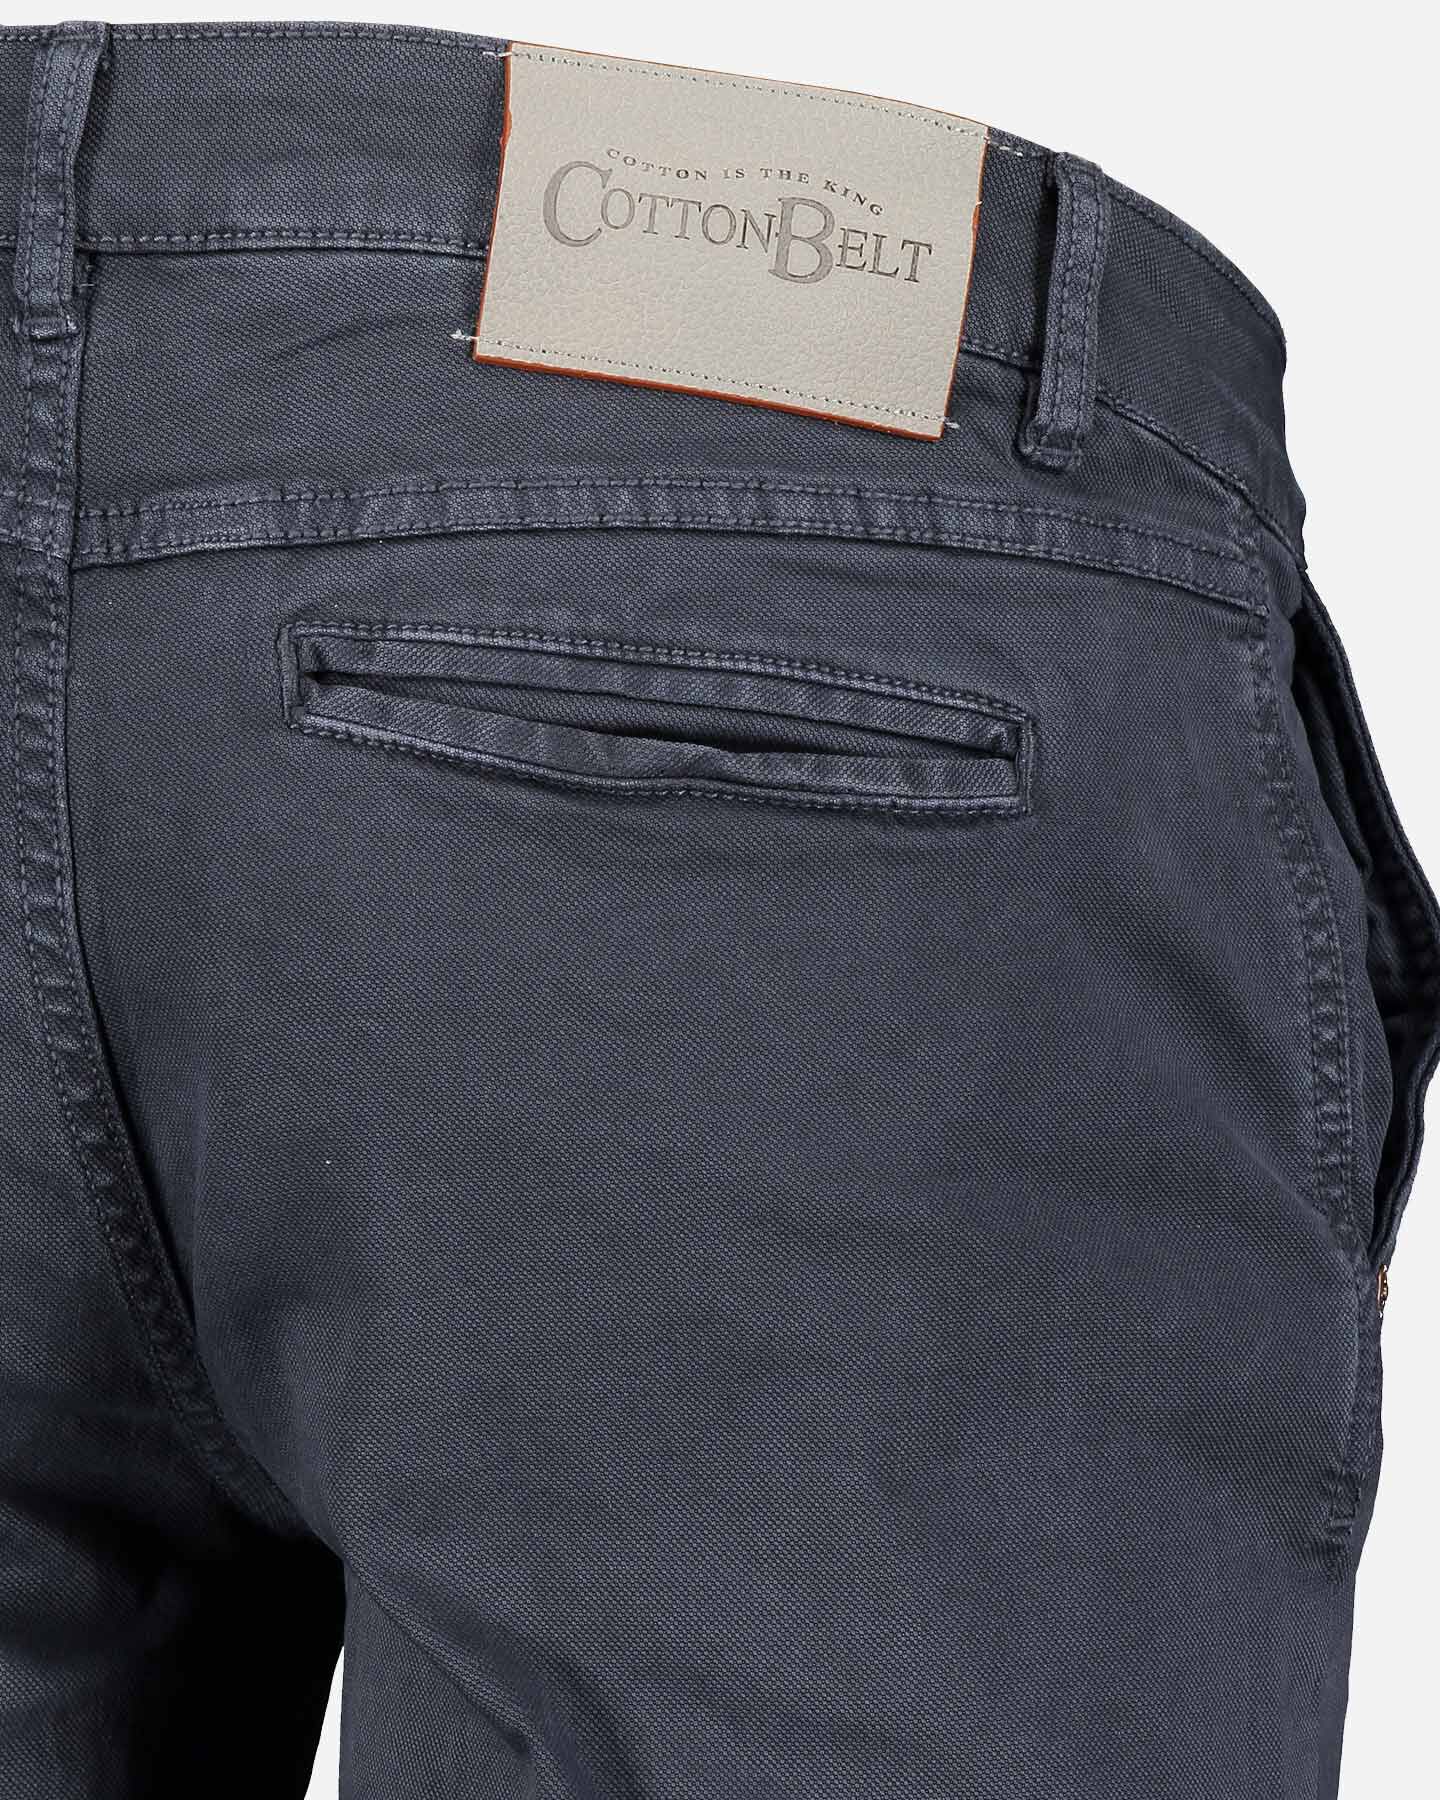  Pantalone COTTON BELT LEON SLIM M S4070908|520|32 scatto 4